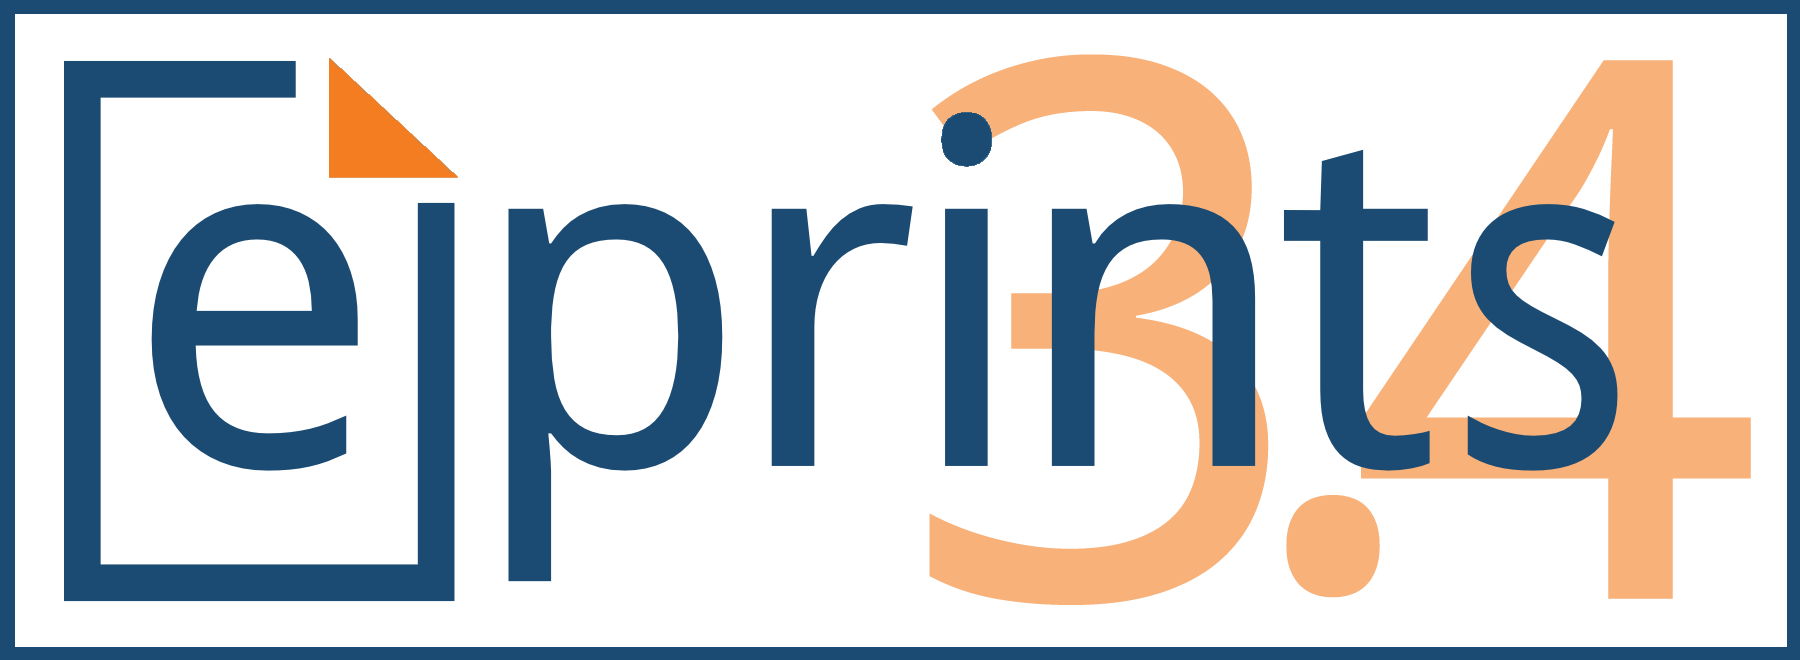 Eprints-Logo34alt6border